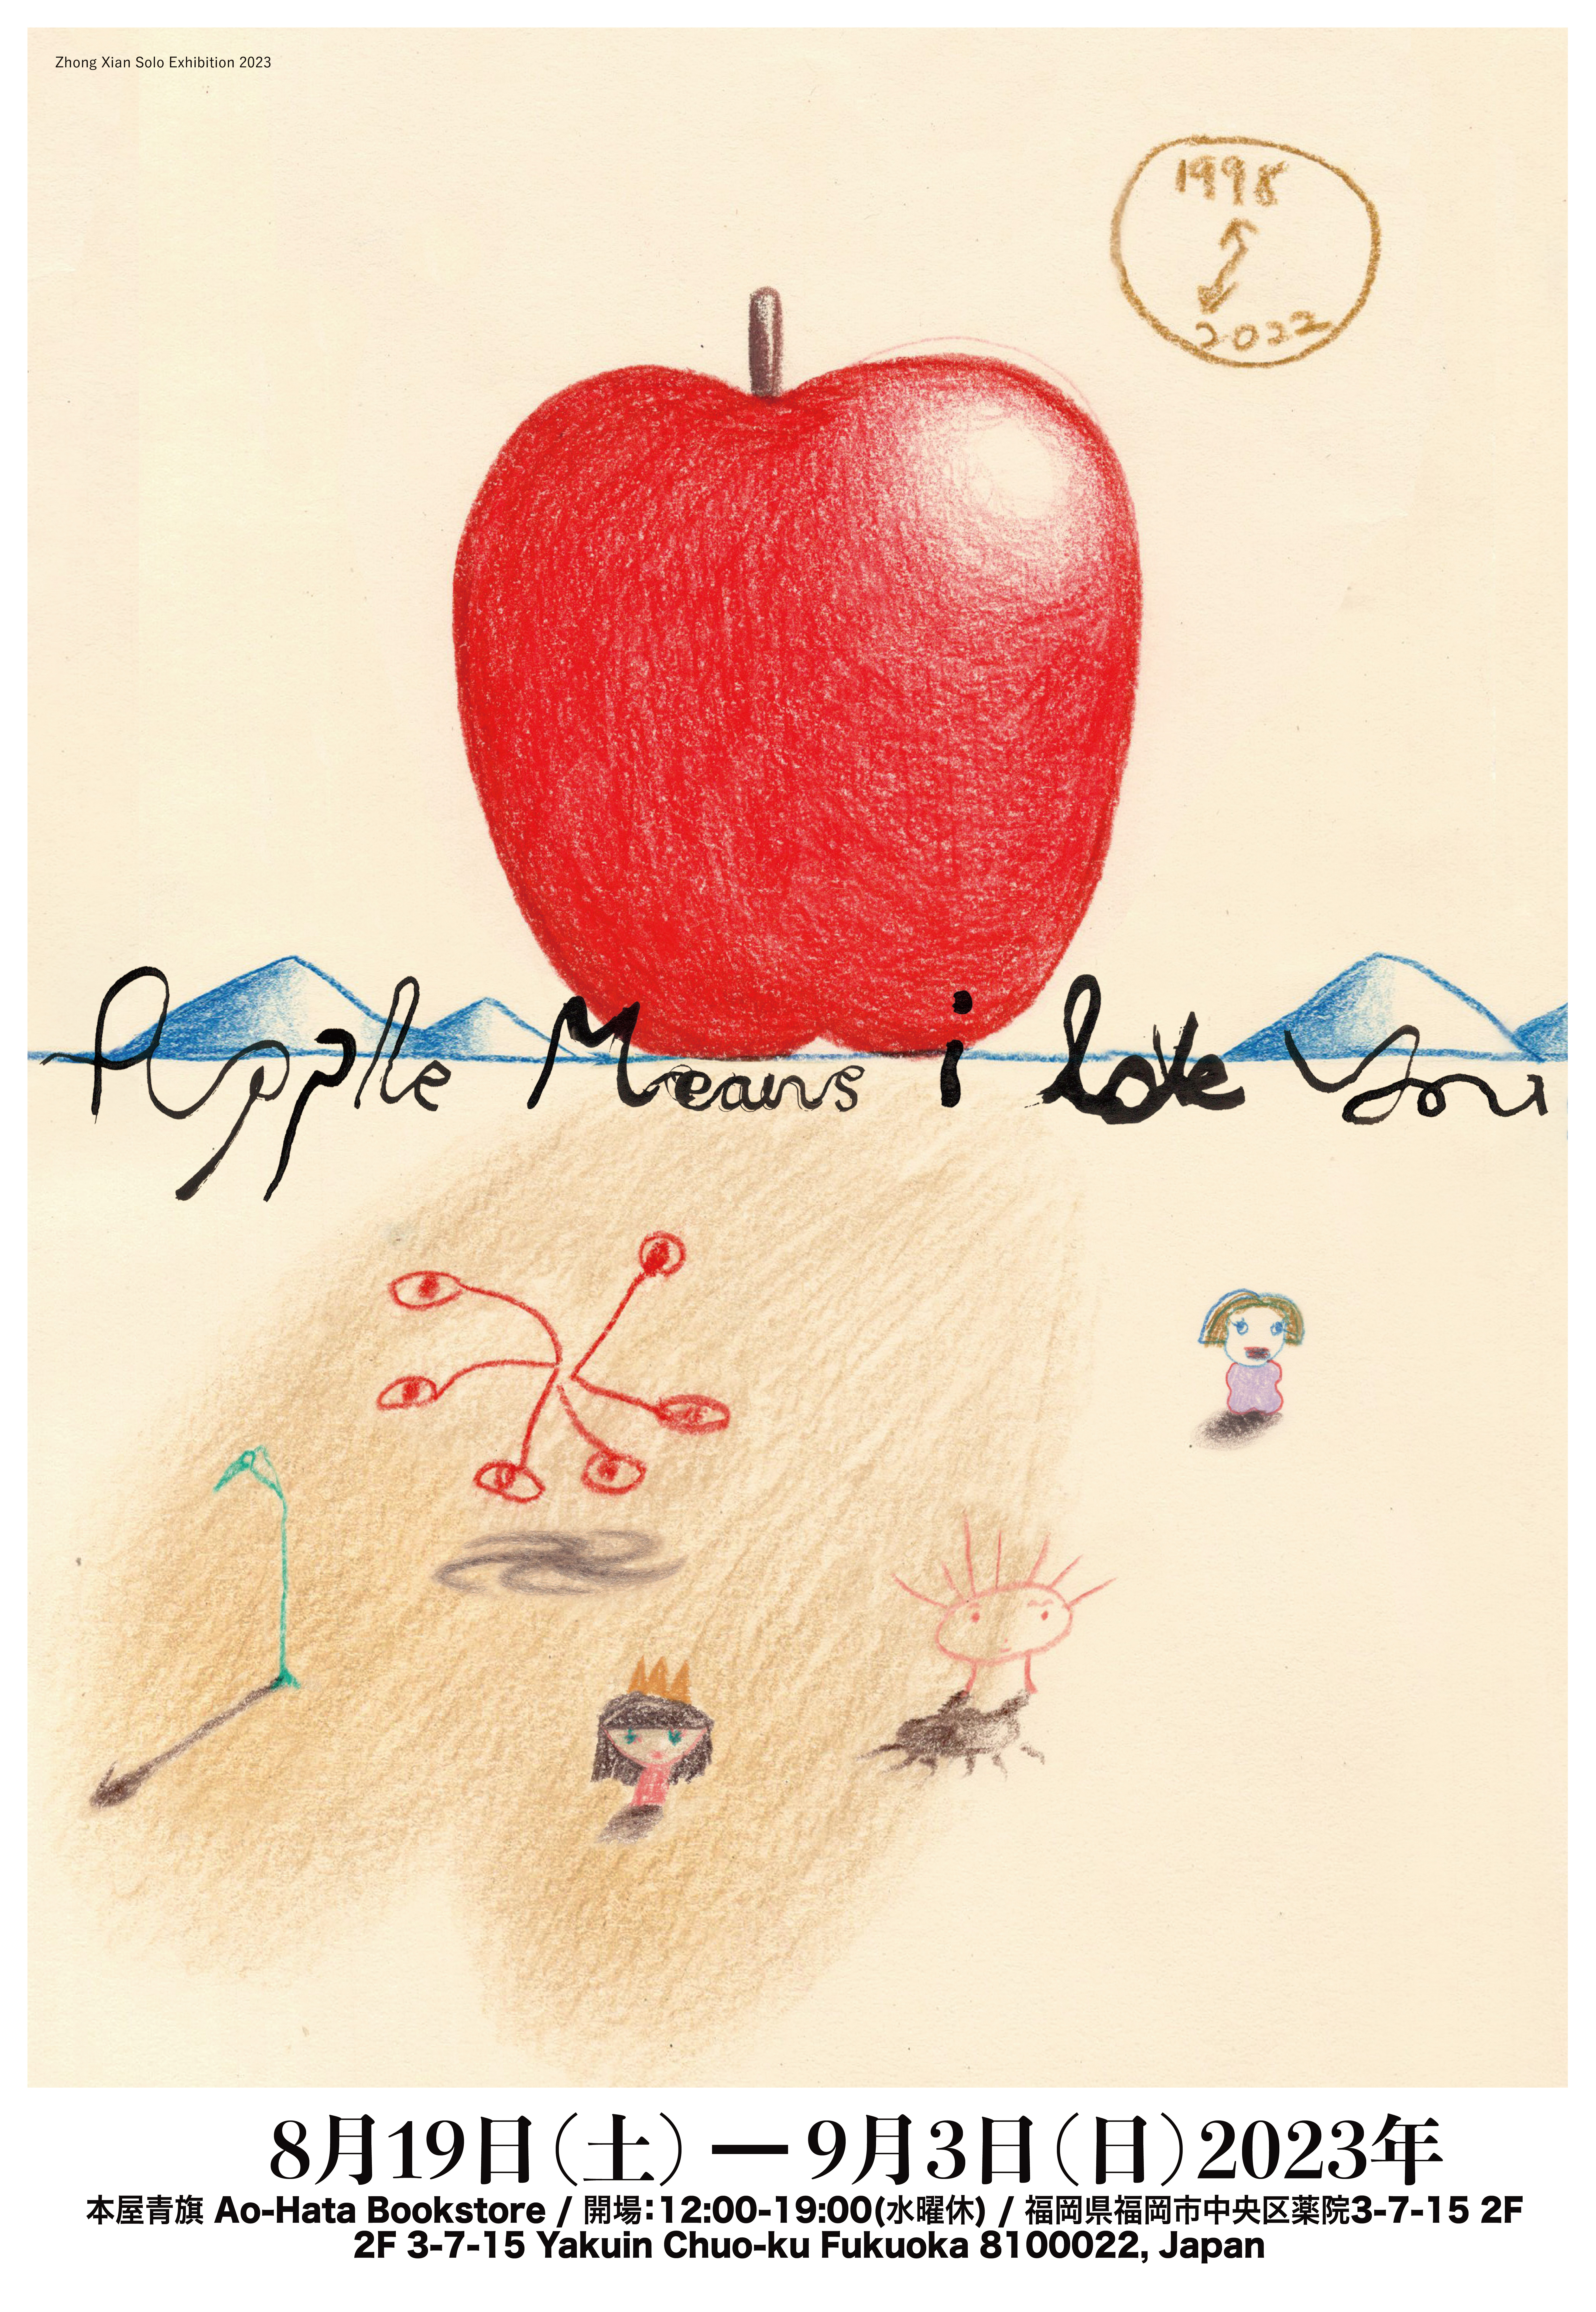 Zhong Xian 「Apple means I love you」 （本屋青旗） ｜Tokyo Art Beat